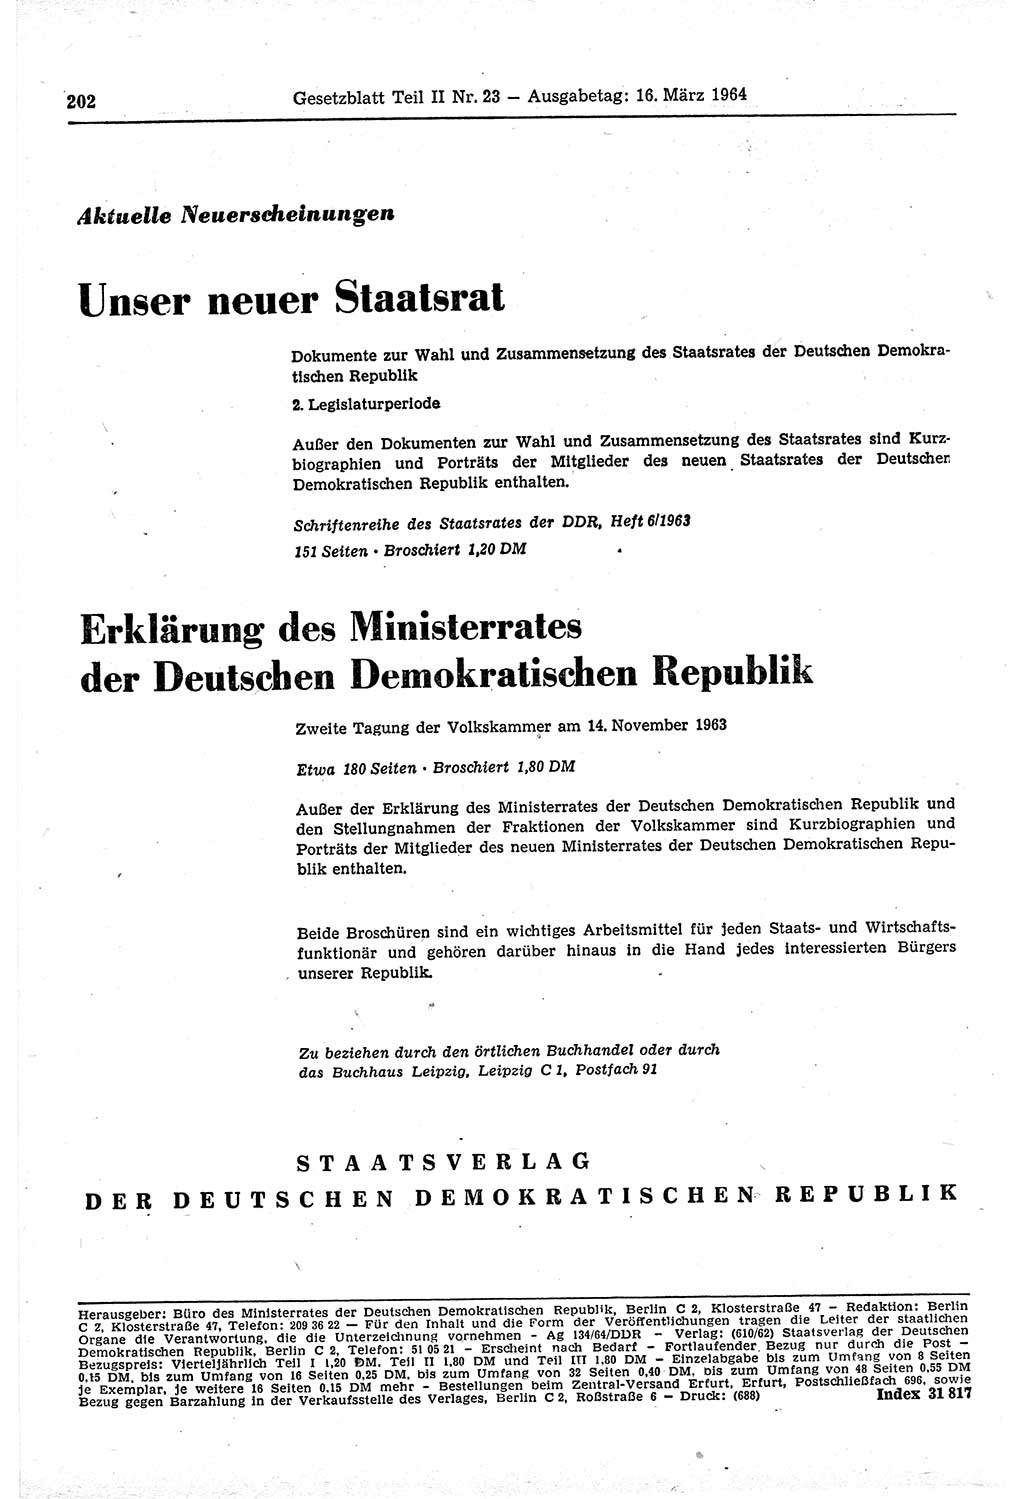 Gesetzblatt (GBl.) der Deutschen Demokratischen Republik (DDR) Teil ⅠⅠ 1964, Seite 202 (GBl. DDR ⅠⅠ 1964, S. 202)